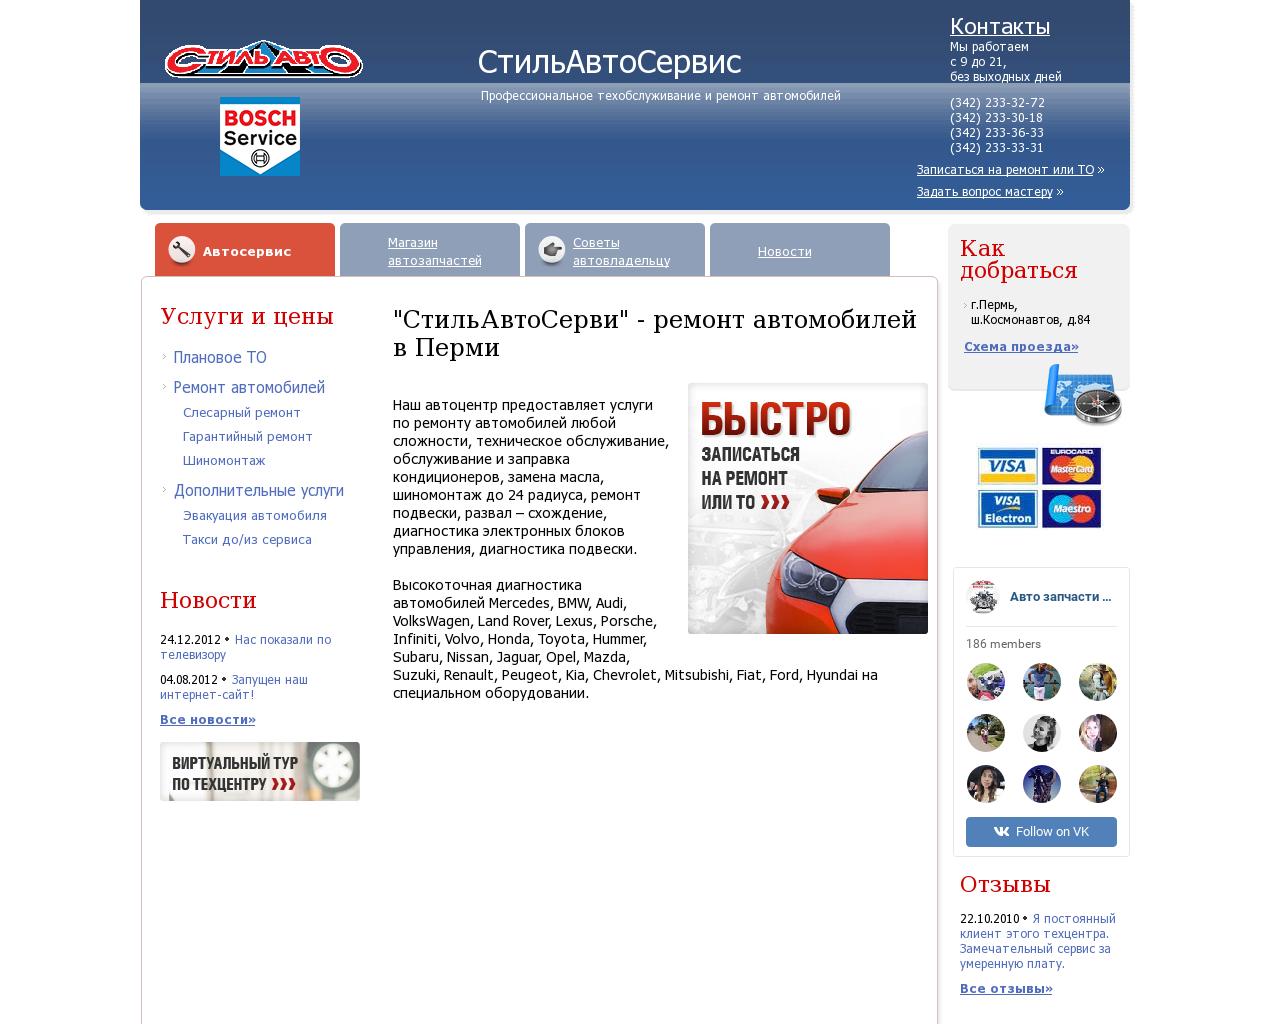 Изображение сайта stylauto.ru в разрешении 1280x1024